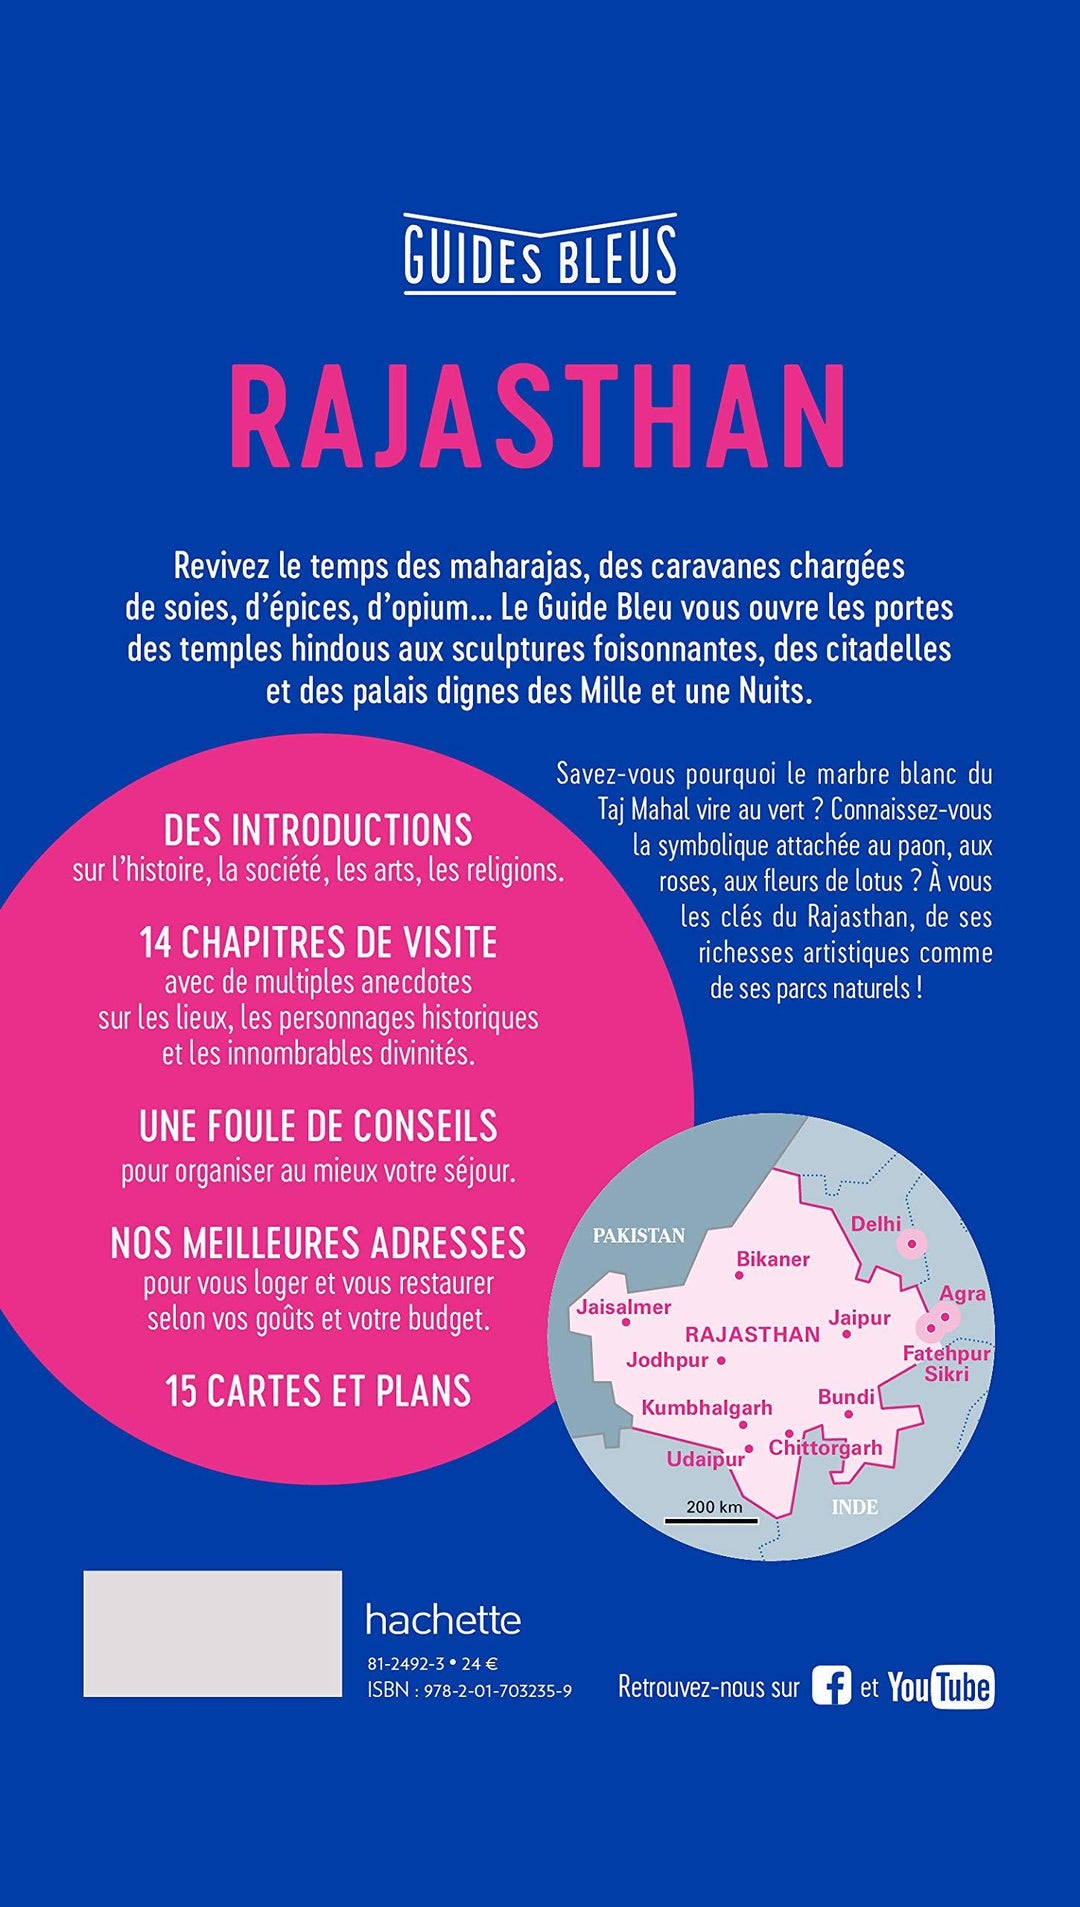 Guide bleu - Rajasthan & les capitales mogholes (Agra, Delhi, Fatehpur Sikri) | Hachette guide de voyage Hachette 